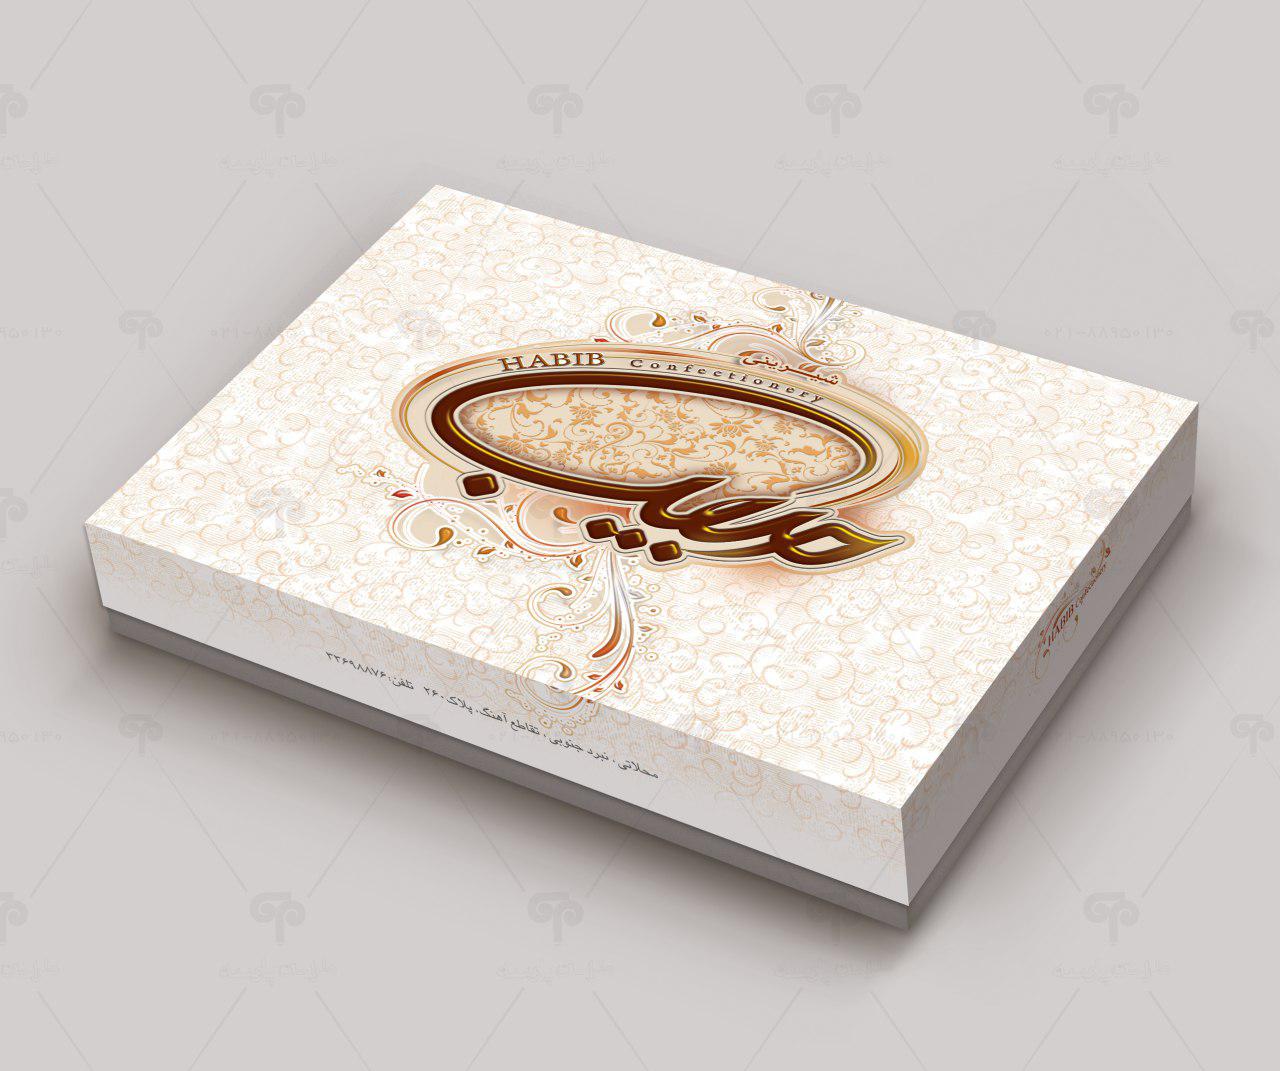 طراحی جعبه شیرینی حبیب